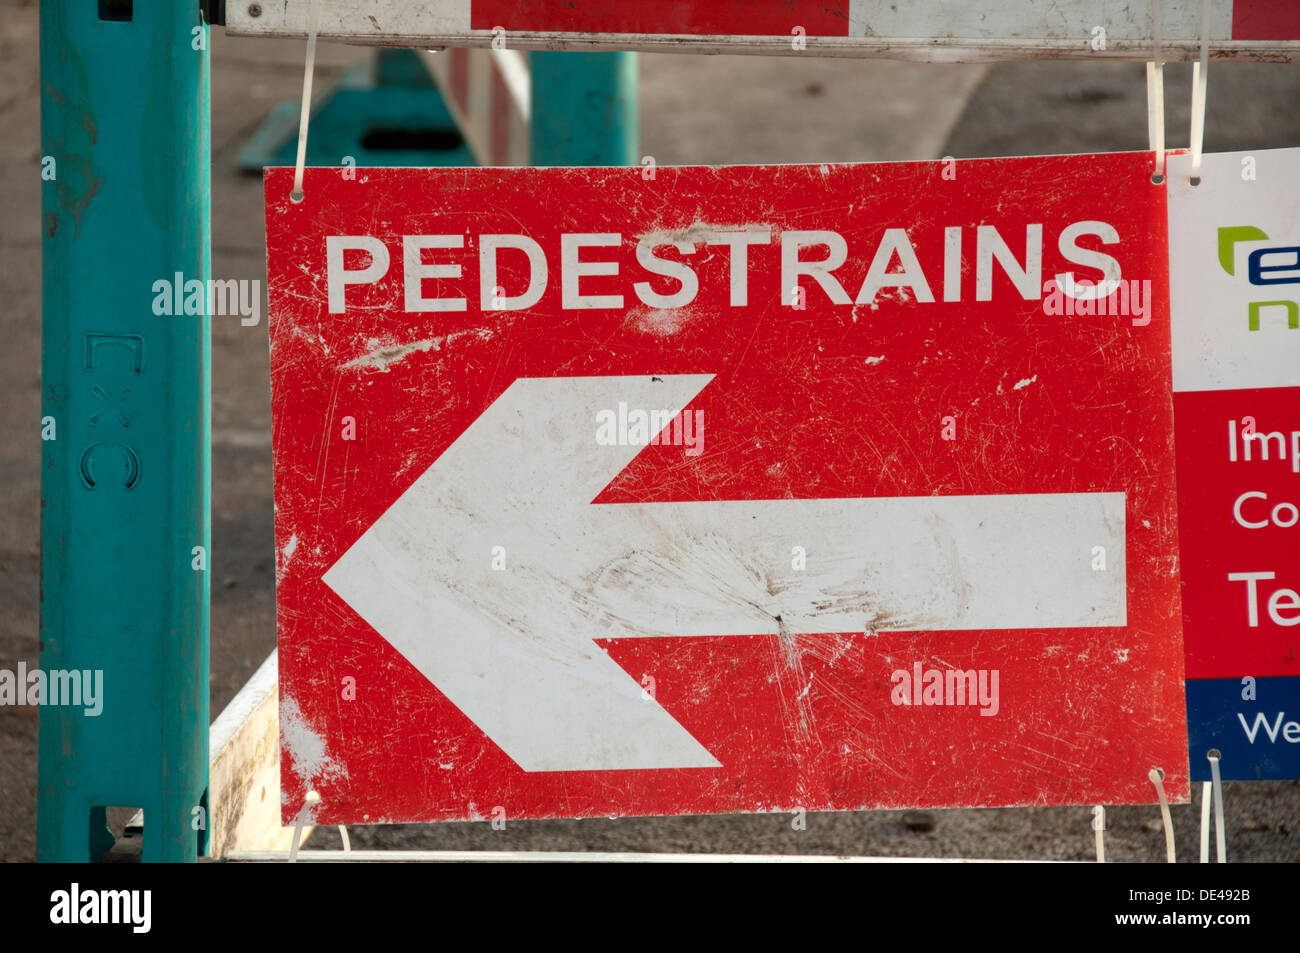 Falsche Schreibweise für eine Richtung melden für Fußgänger, Dinkel "Pedestrains".  Droylsden, Manchester, England, UK Stockfoto